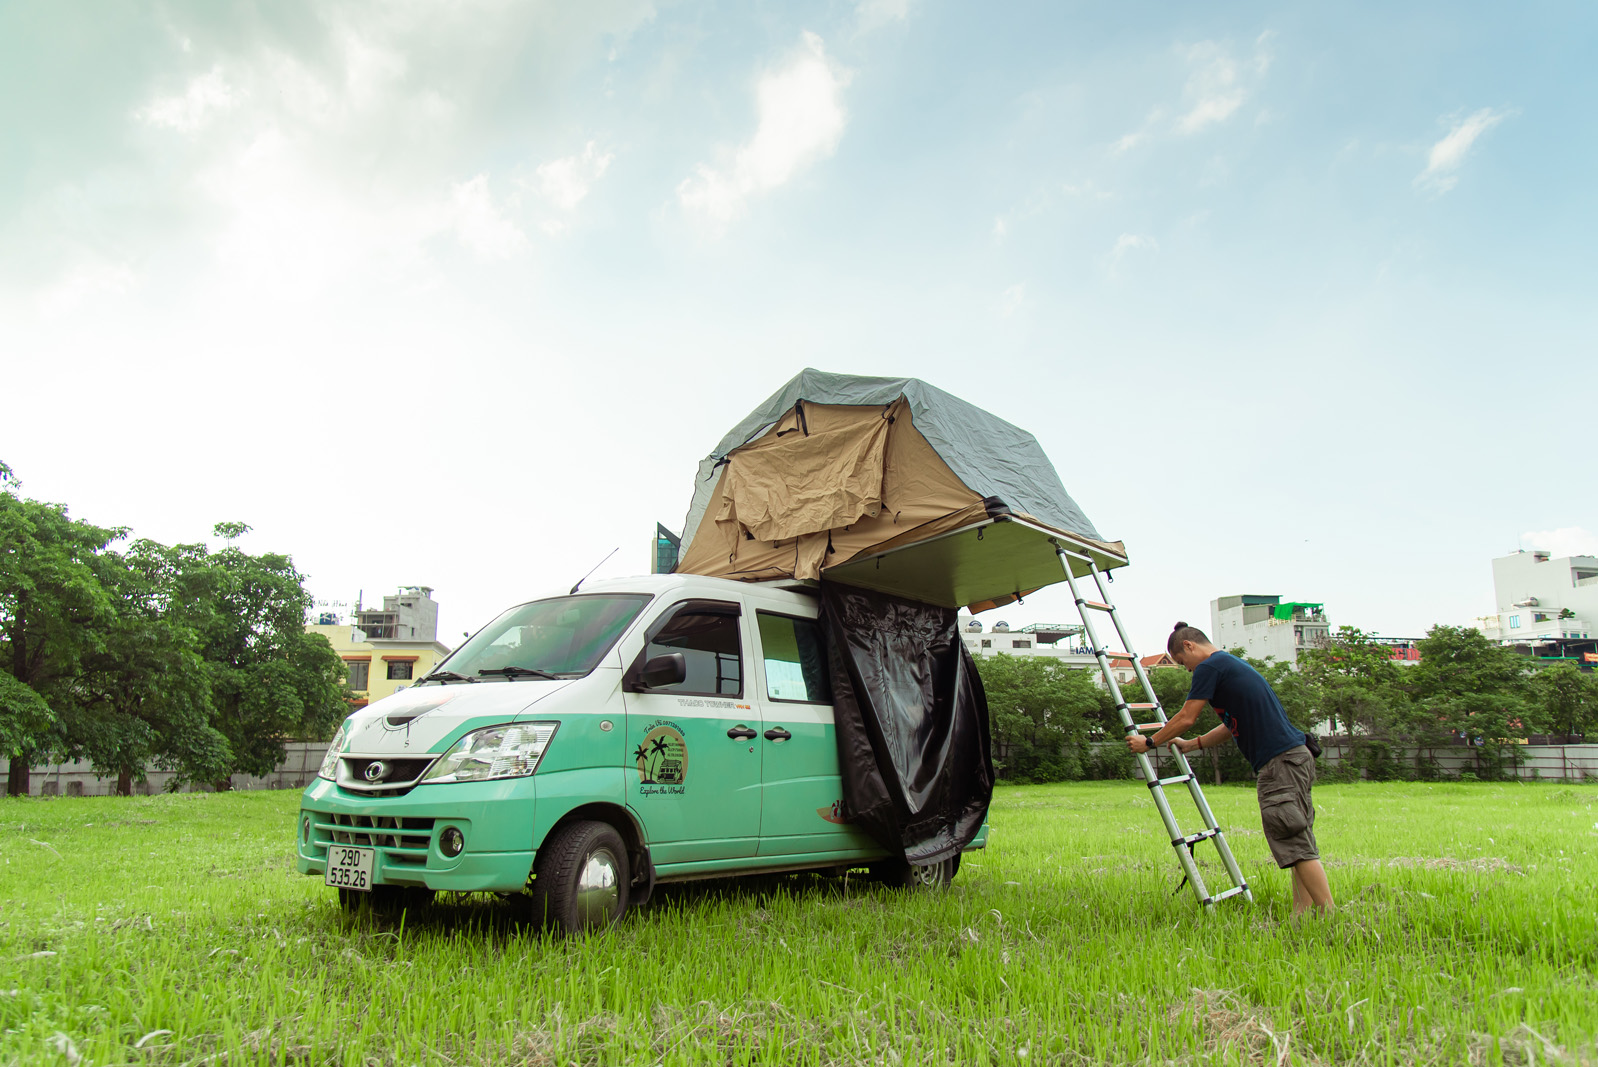 Bán Triton mua xe van THACO hơn 300 triệu độ camping chạy Bắc Nam hơn 18.000km, chủ xe trải lòng: 'Vui, tiện nhưng đi xa hơi cực' - Ảnh 4.